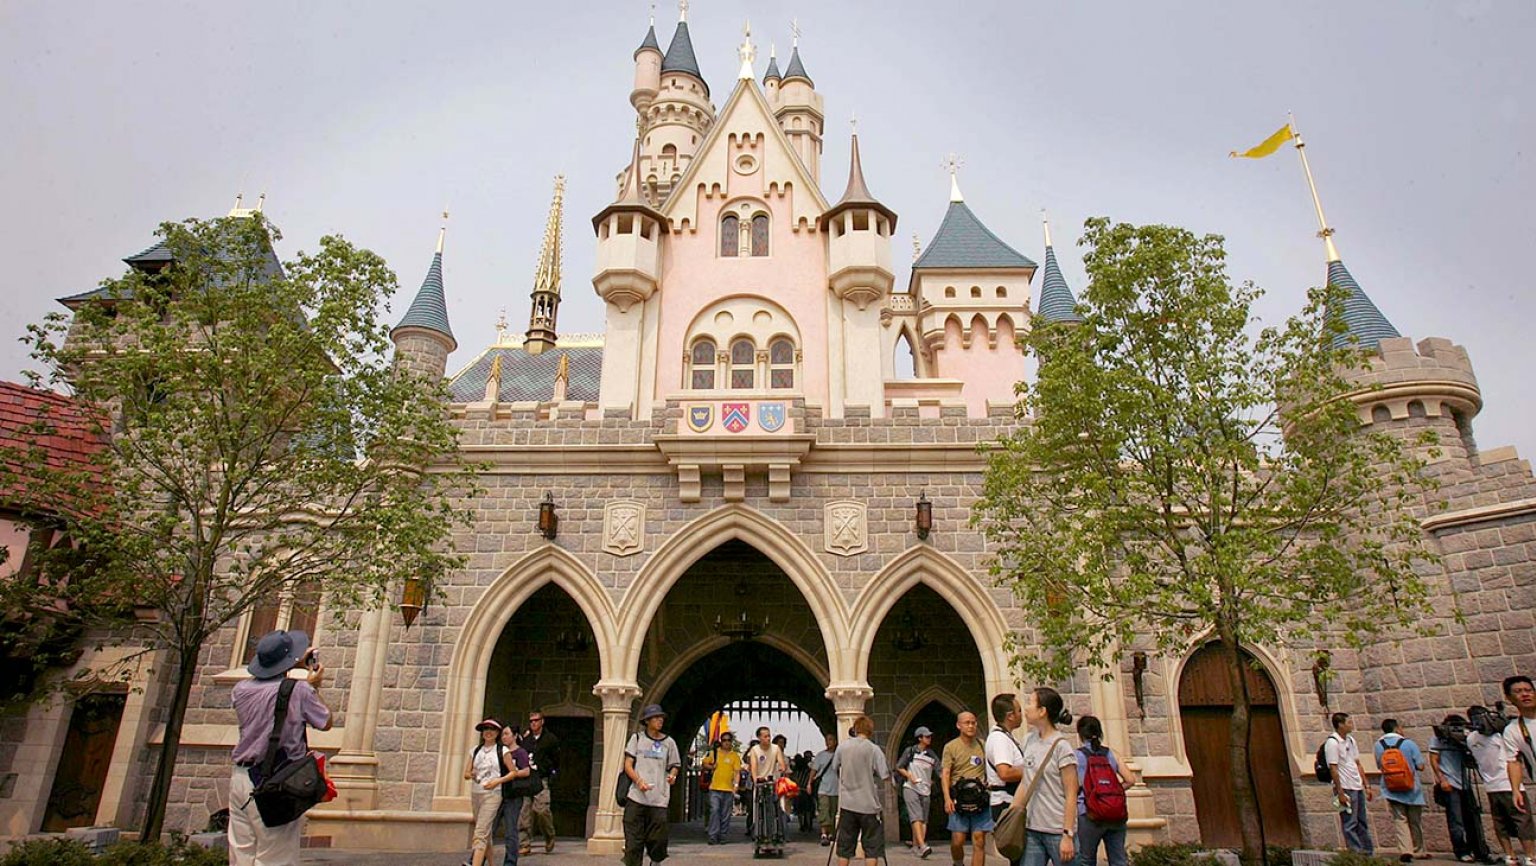 香港迪士尼乐园将于6月18日重新开放，需提前7日预约 - 娱乐 - 新京报网